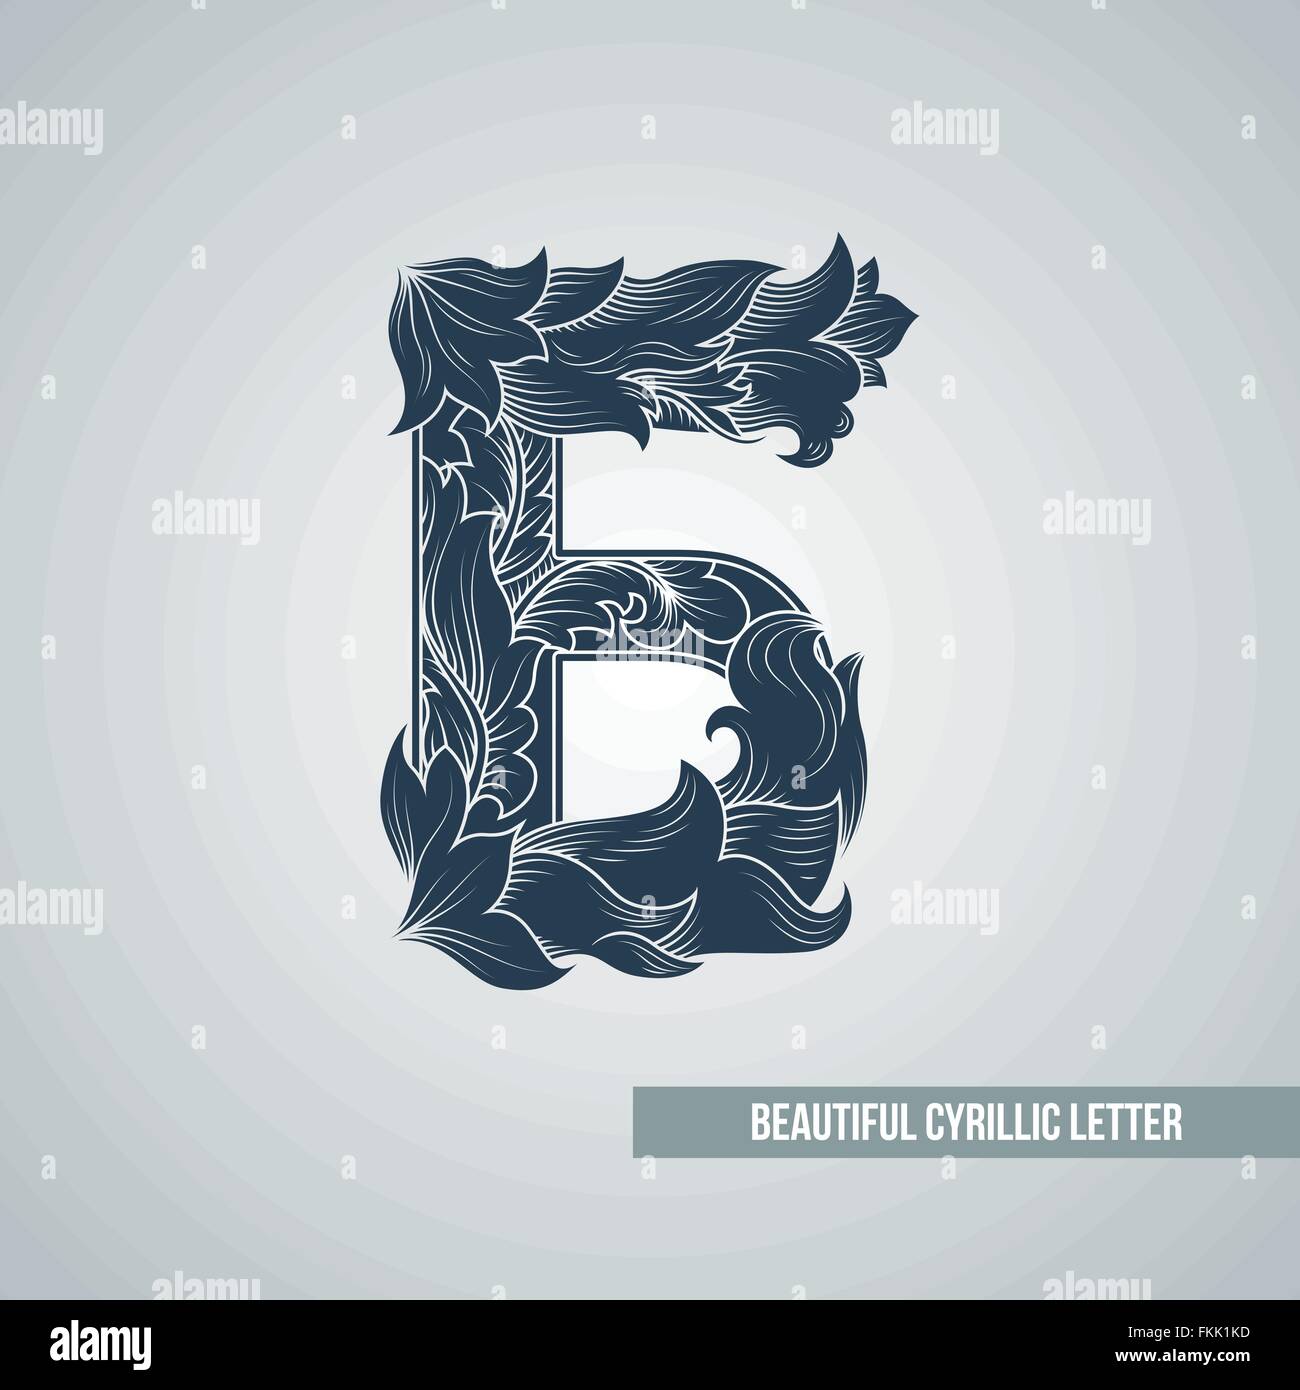 Б буки л. Стилизованная буква б. Стилизация буквы б. Стилизованная буква а для логотипа. Стилизованные буквы для лого.